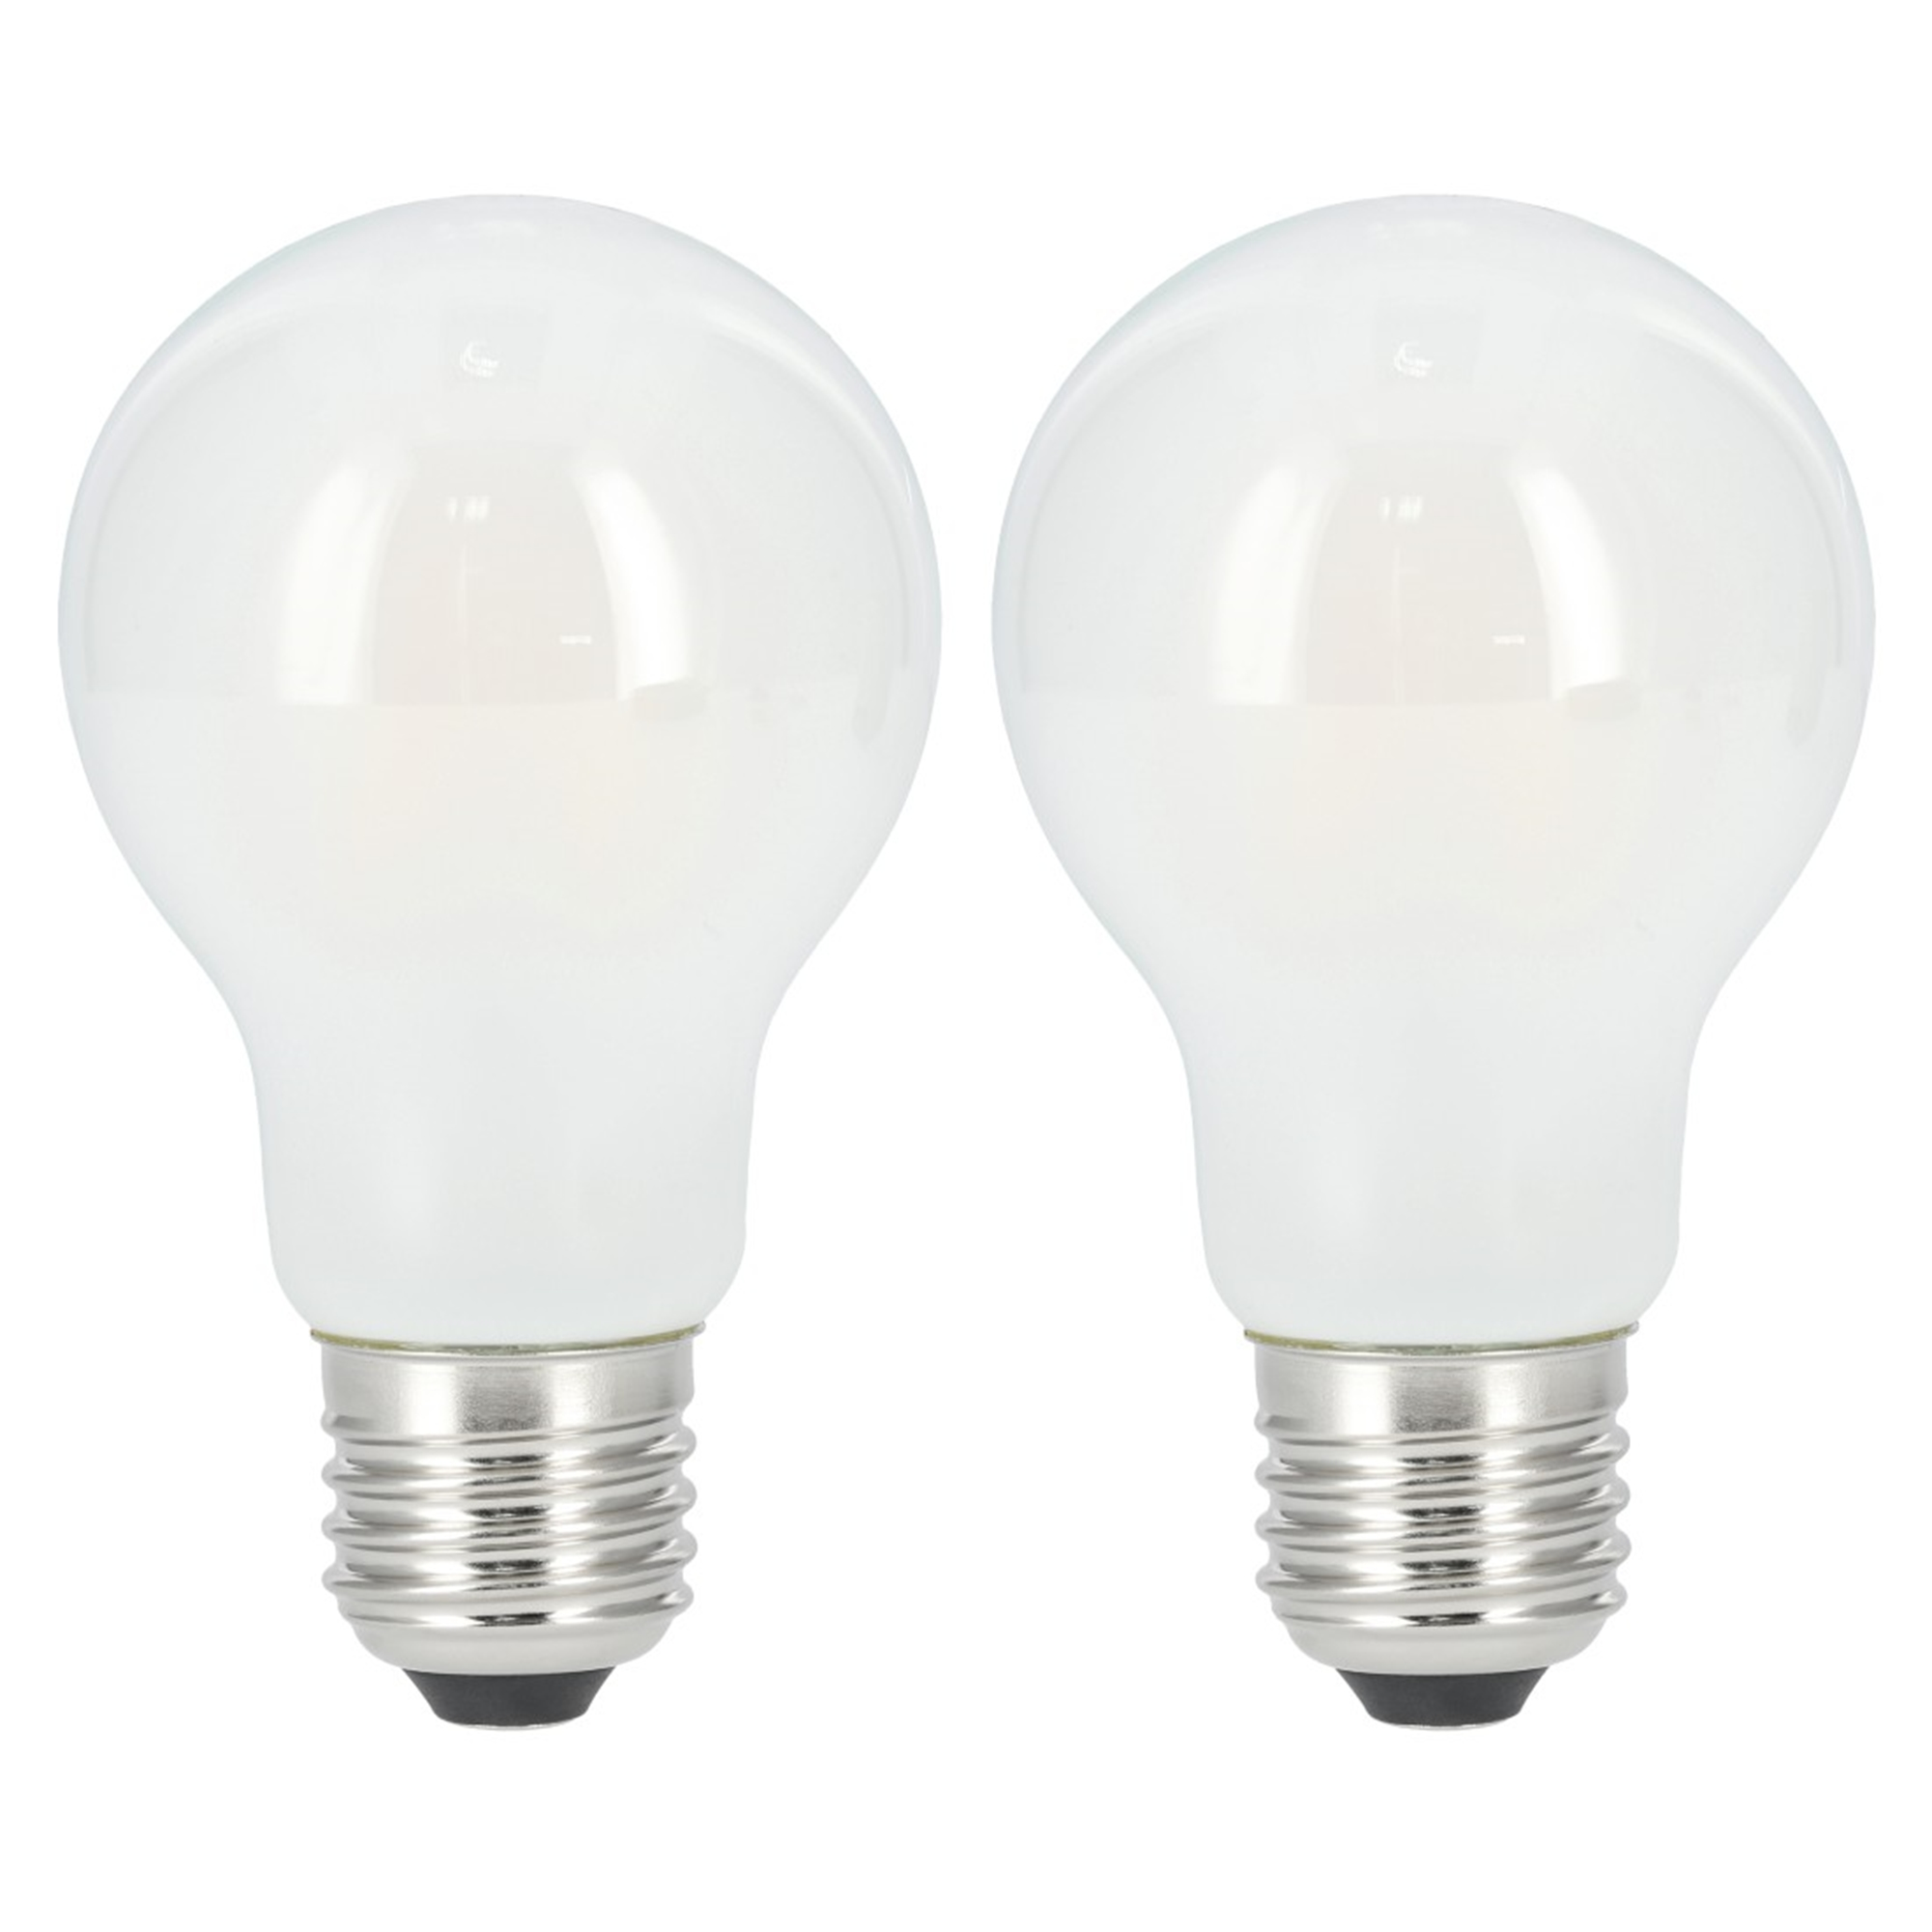 XAVAX E27, 806lm ersetzt Warmweiß 60W LED-Lampe E27